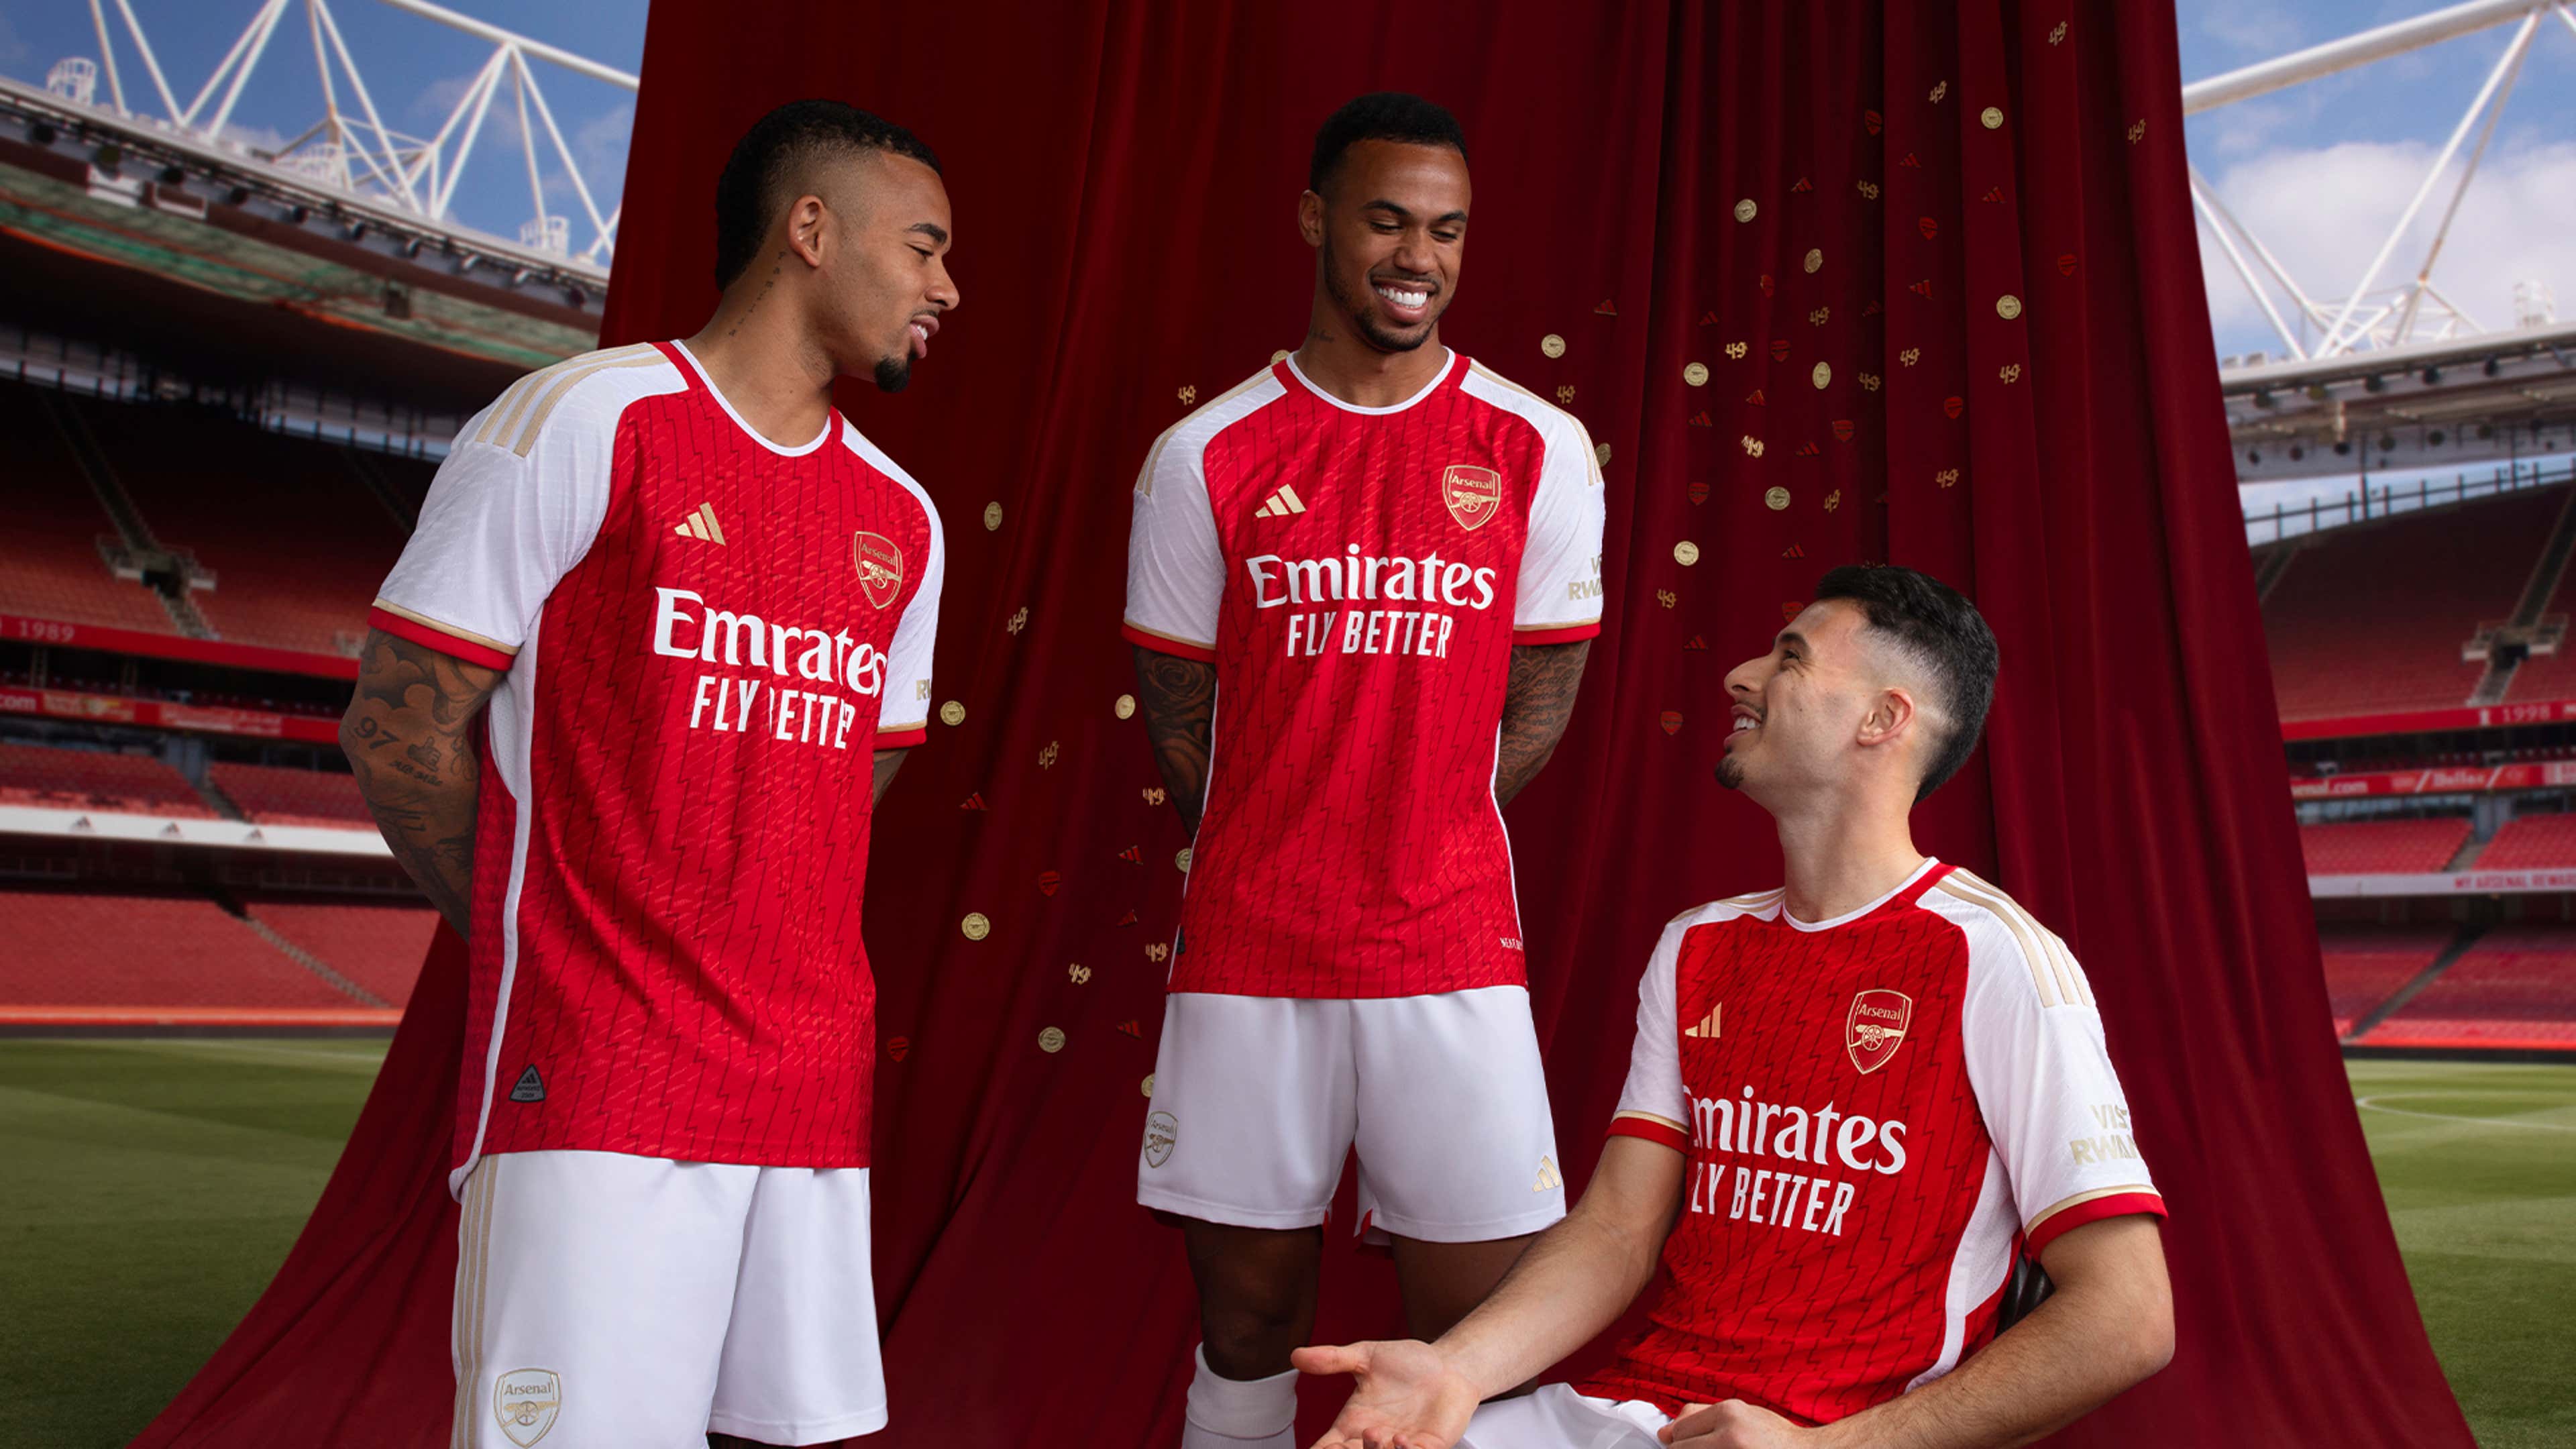 Arsenal công bố áo đấu mới cực chất - Bóng Đá